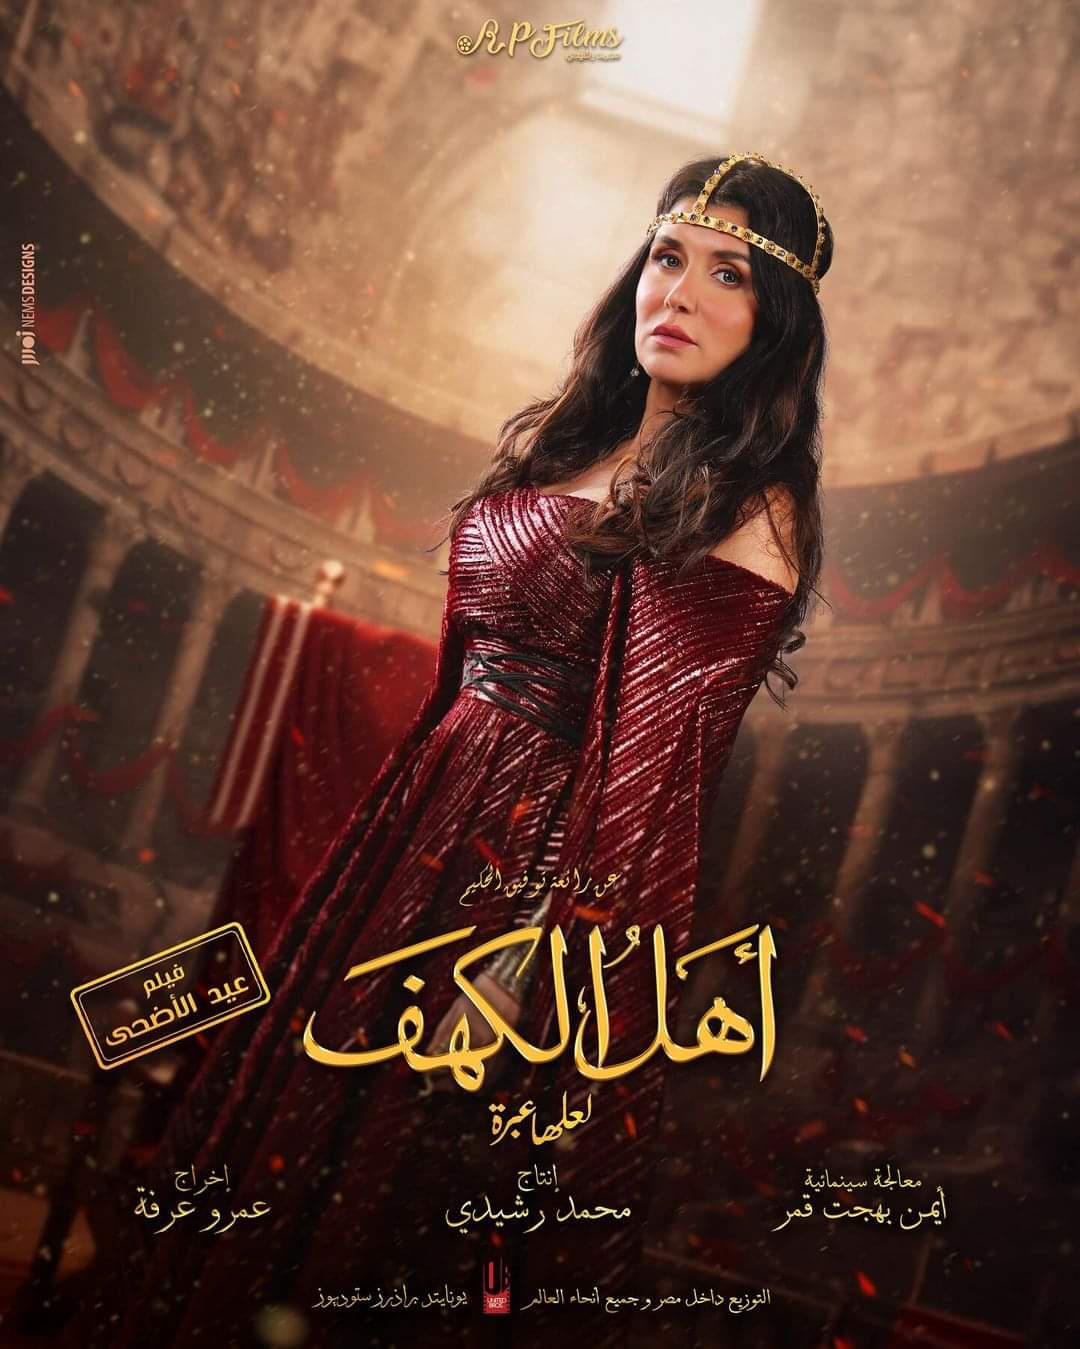 غادة عادل بوستر فيلم اهل الكهف